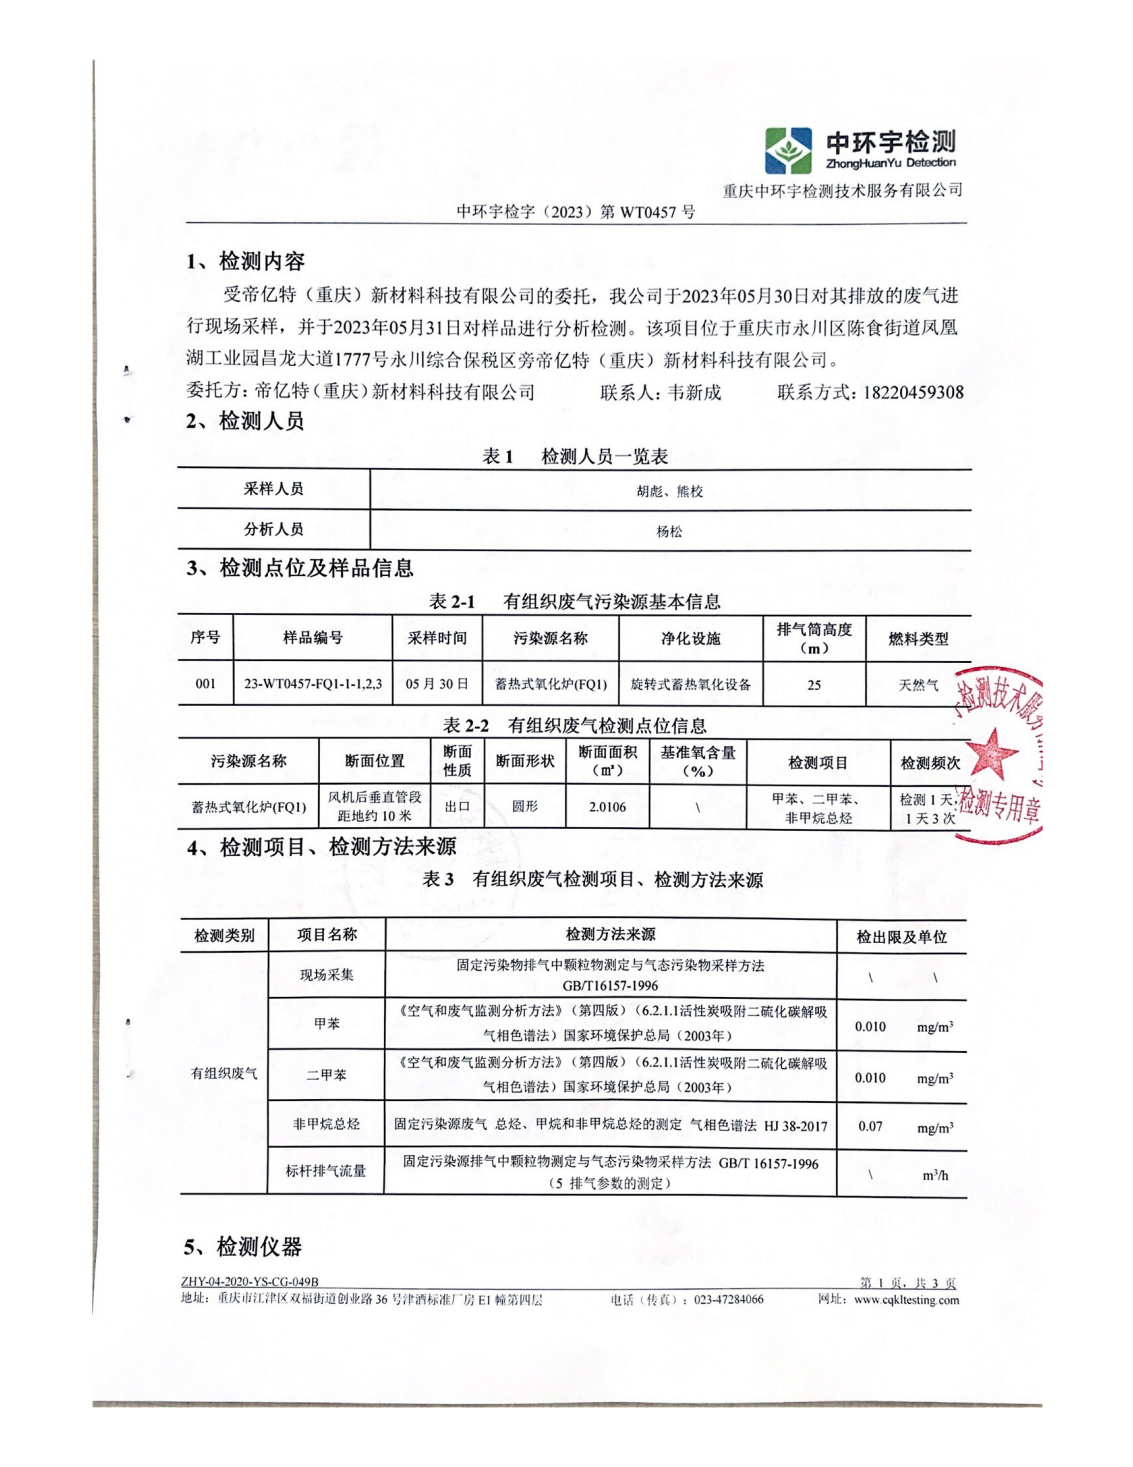 帝亿特第三方检测报告(2)_02.png